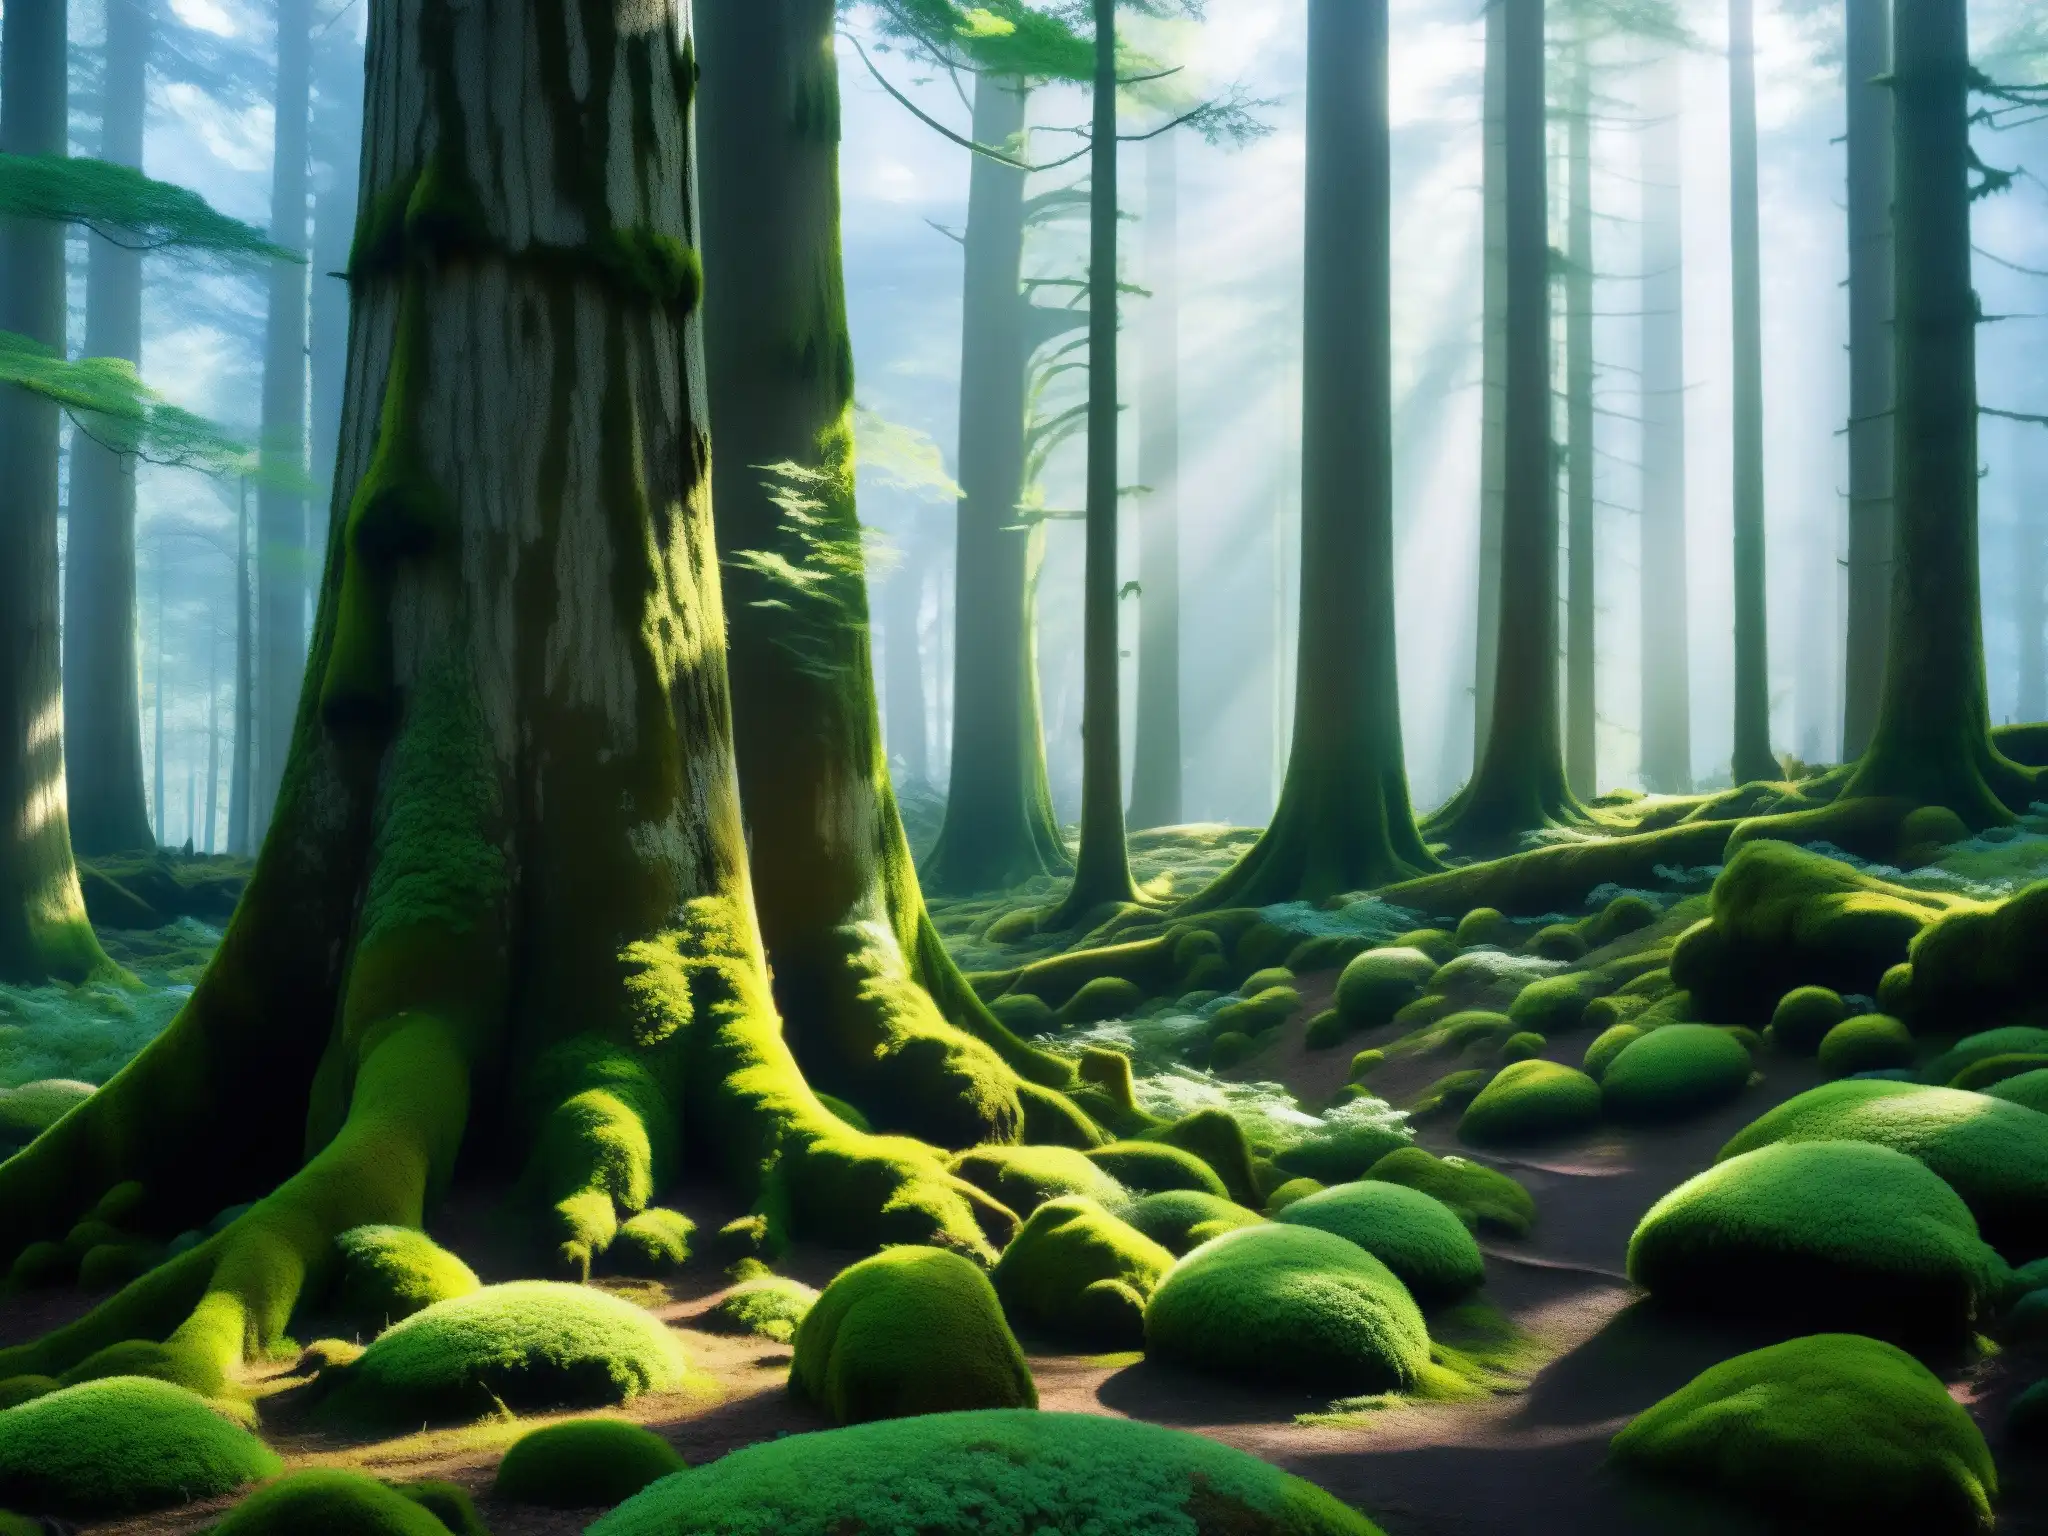 Un bosque denso y misterioso, donde la luz del sol se filtra entre los árboles antiguos